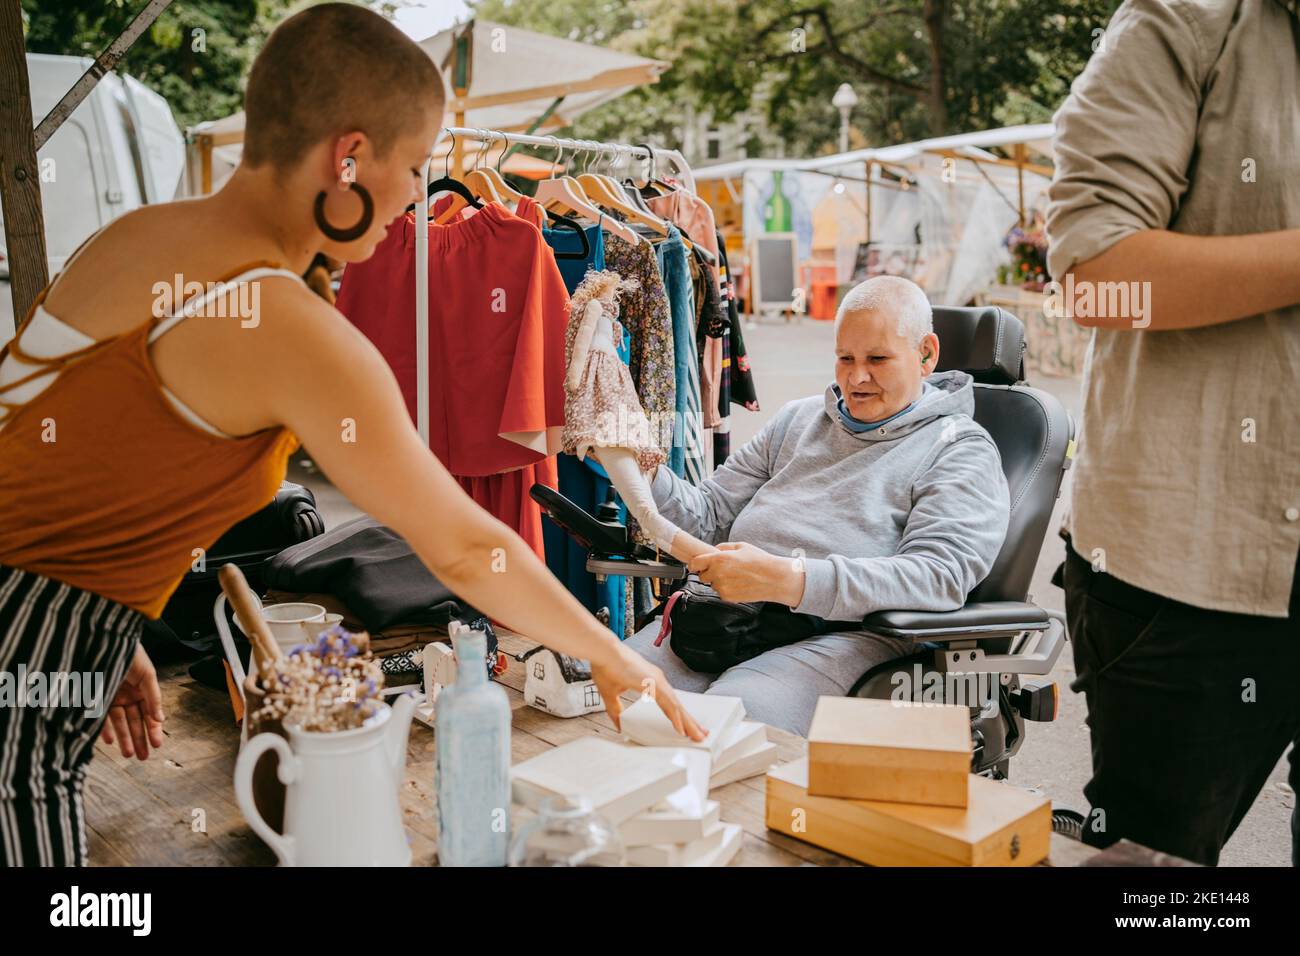 Weibliche Kundin mit Behinderung, die mit dem Besitzer spricht, während sie auf dem Flohmarkt einkaufen Stockfoto